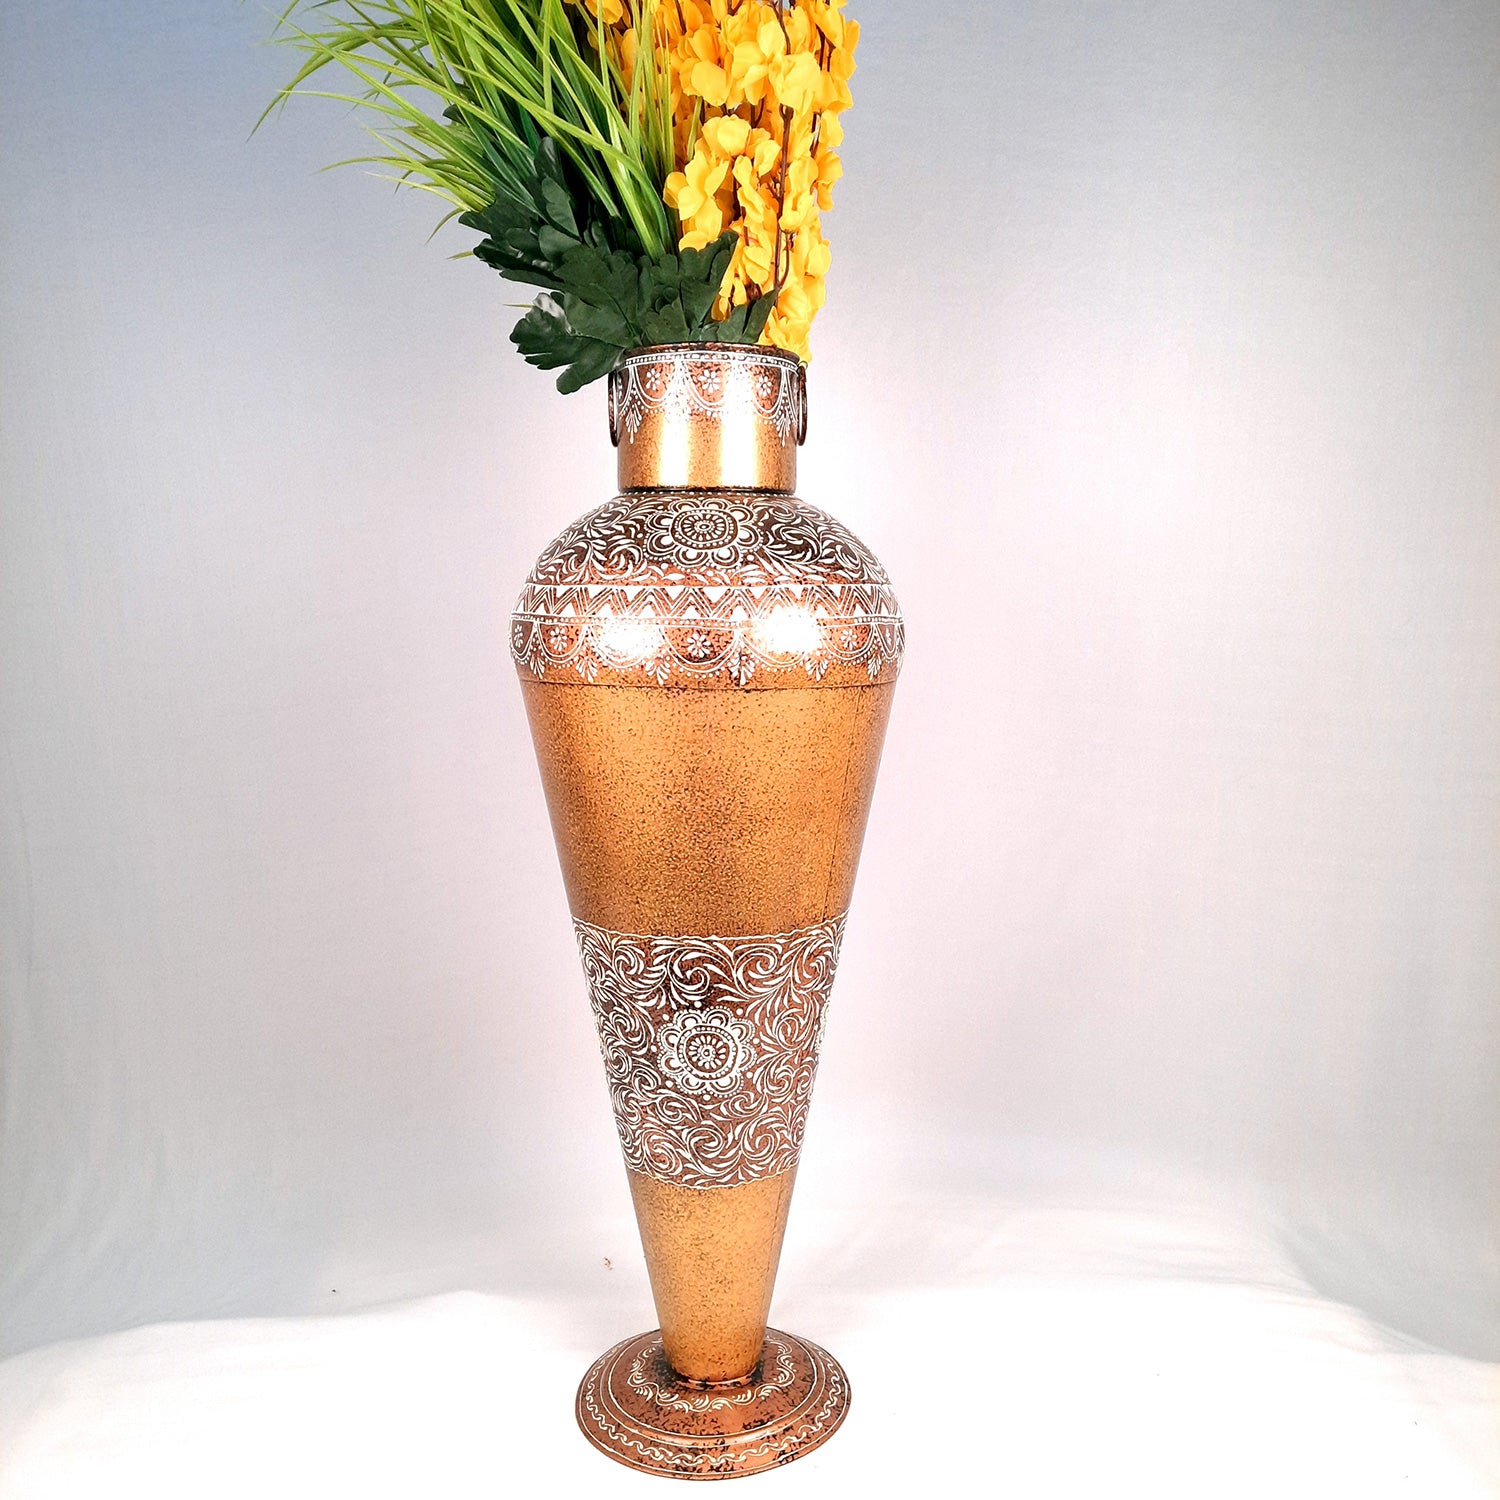 Flower Vase for Corner Decoration | Large Flower Pot - for Home, Living Room, Hallway, Entrance Decor - 32 Inch - Apkamart